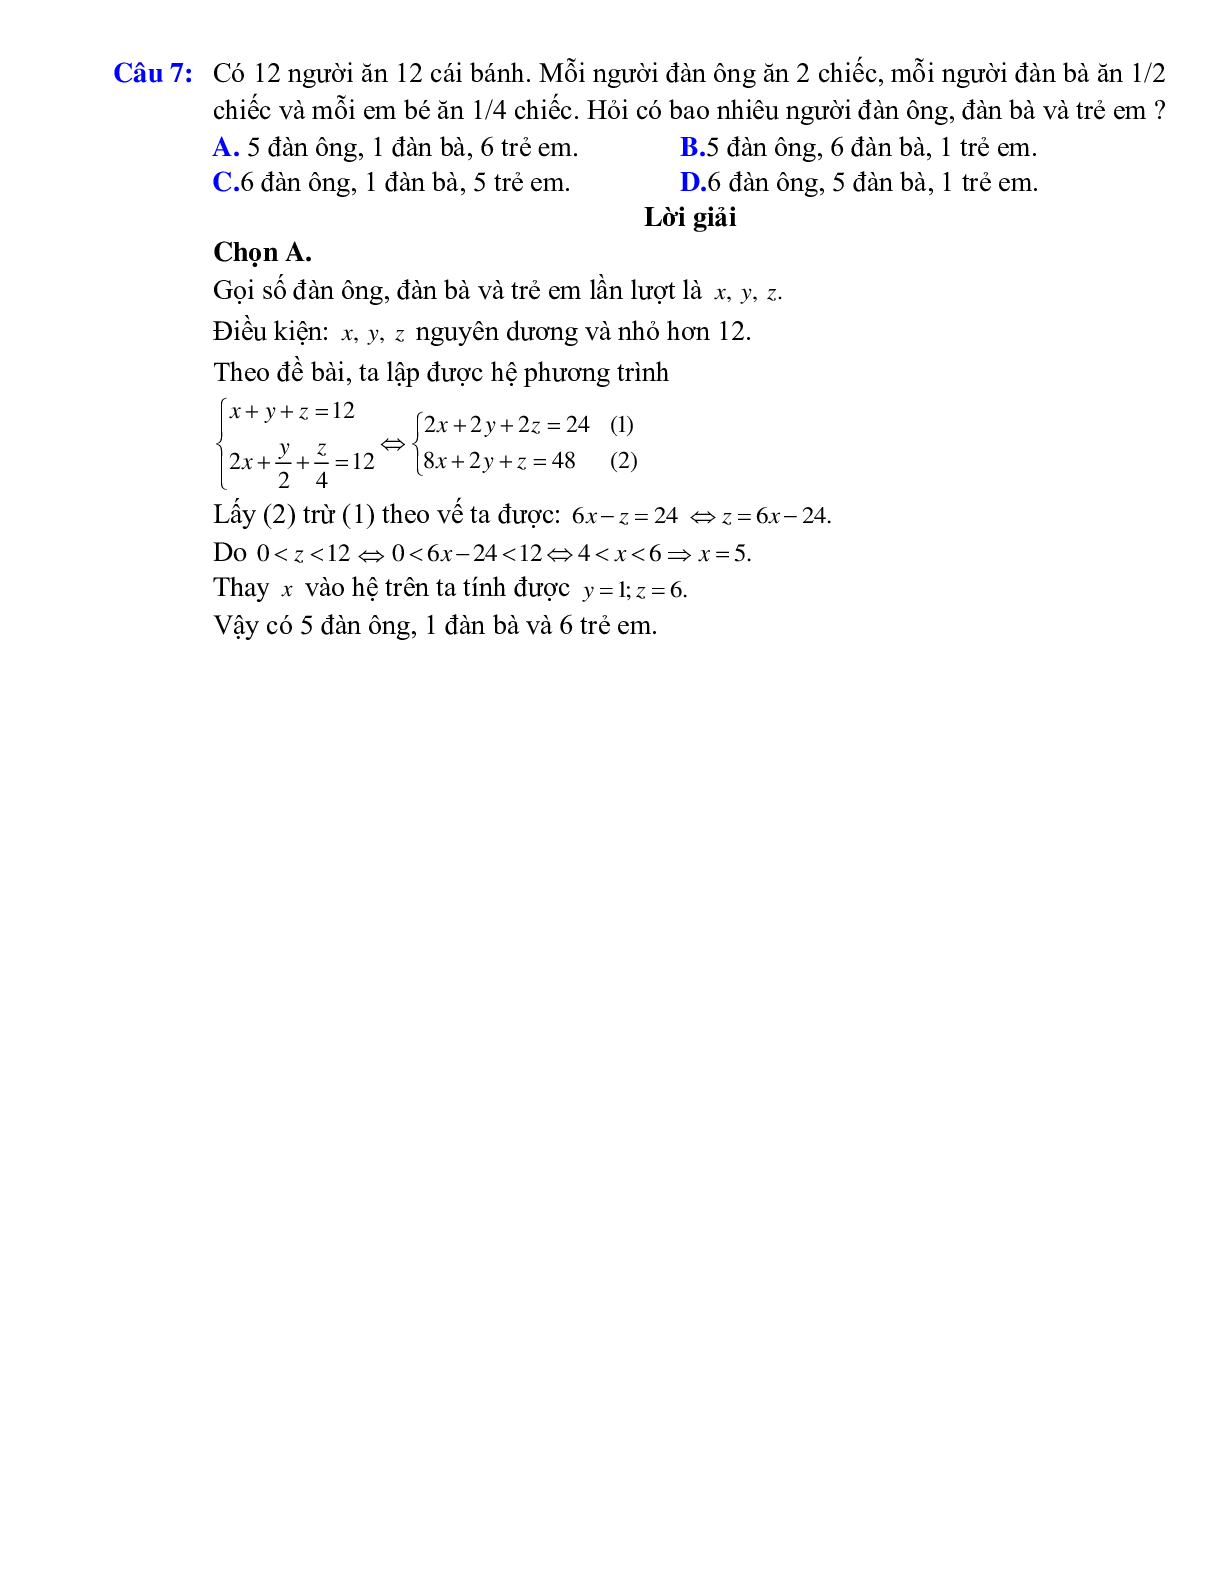 Giải bài toán bằng cách lập hệ phương trình bậc nhất ba ẩn (trang 4)